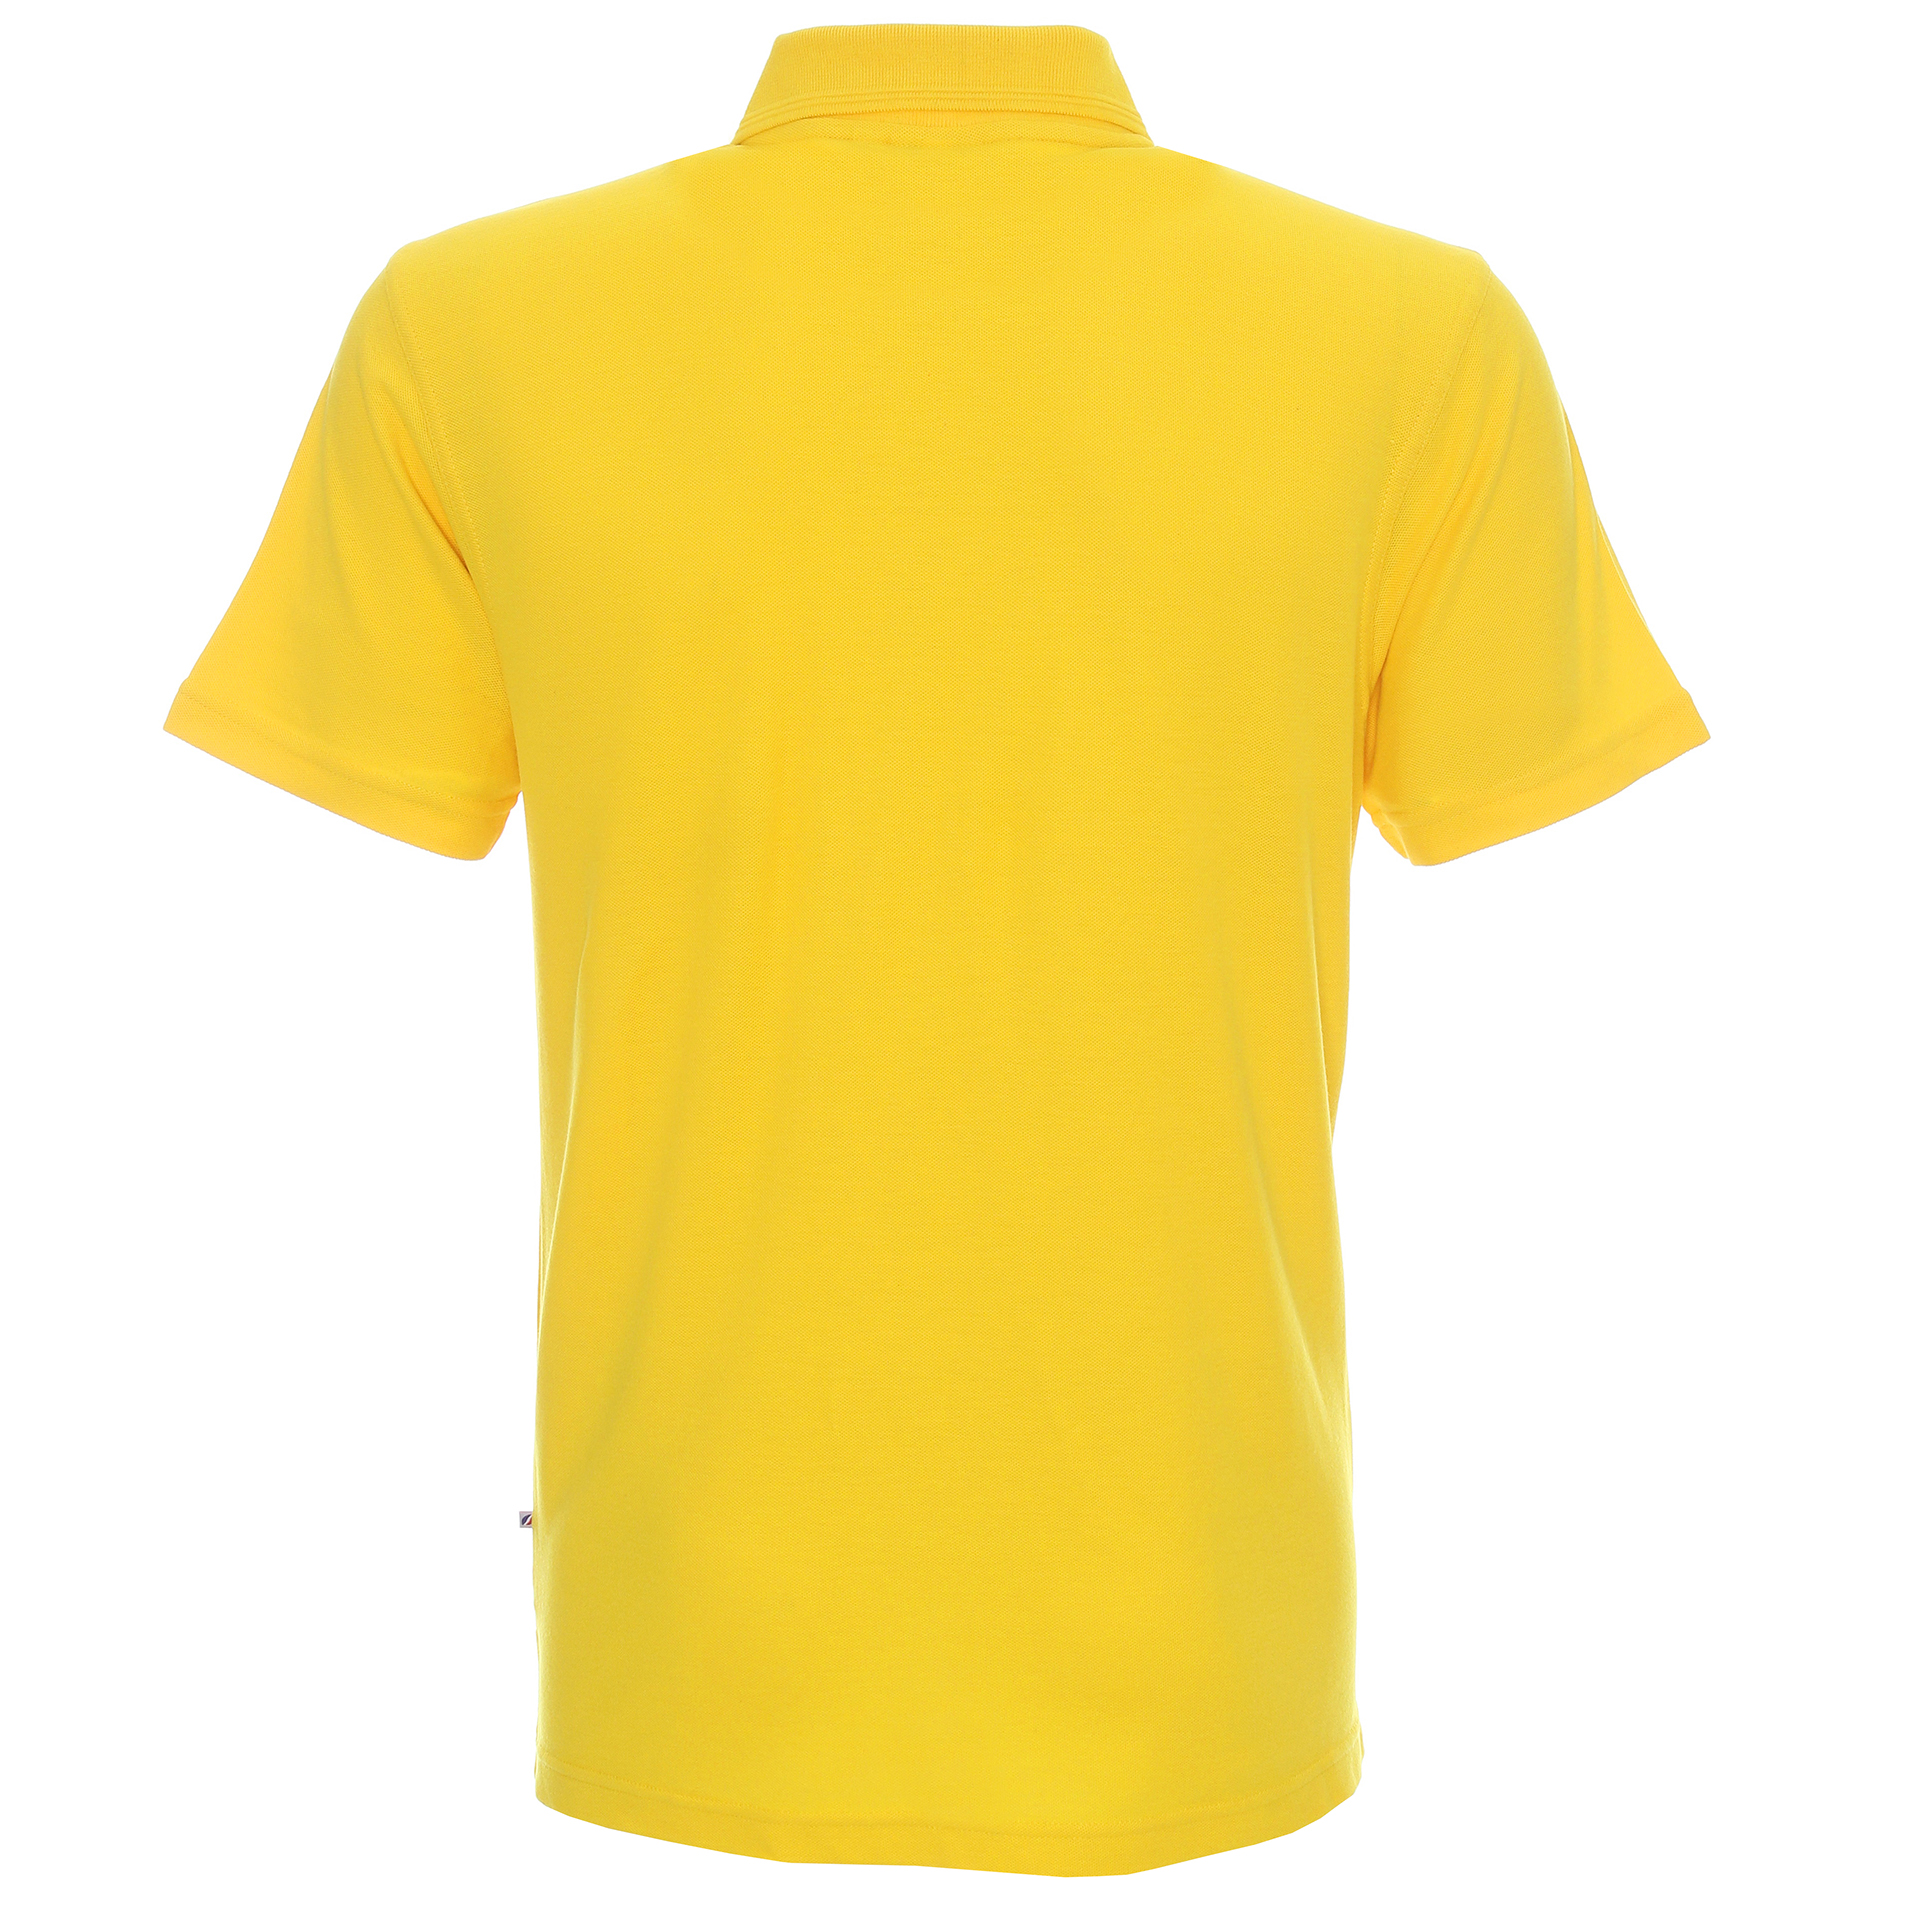 Koszulka Promostars Polo Cotton - żółta